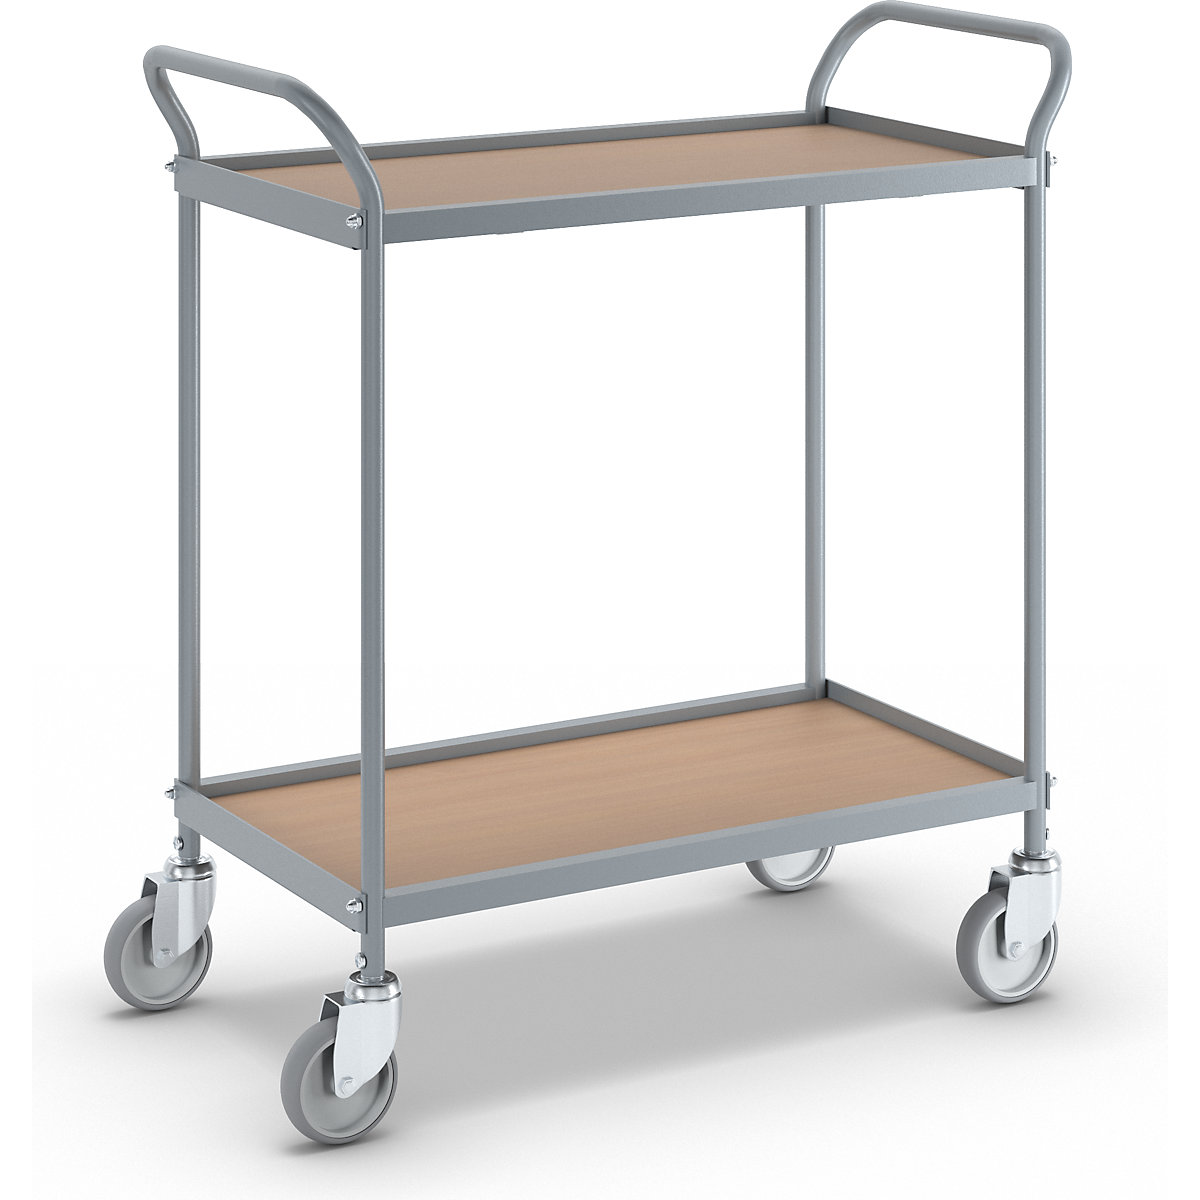 Serving trolley – eurokraft pro, shelf height 530 mm, 2 shelves, with 4 swivel castors, wheel Ø 100 mm-3